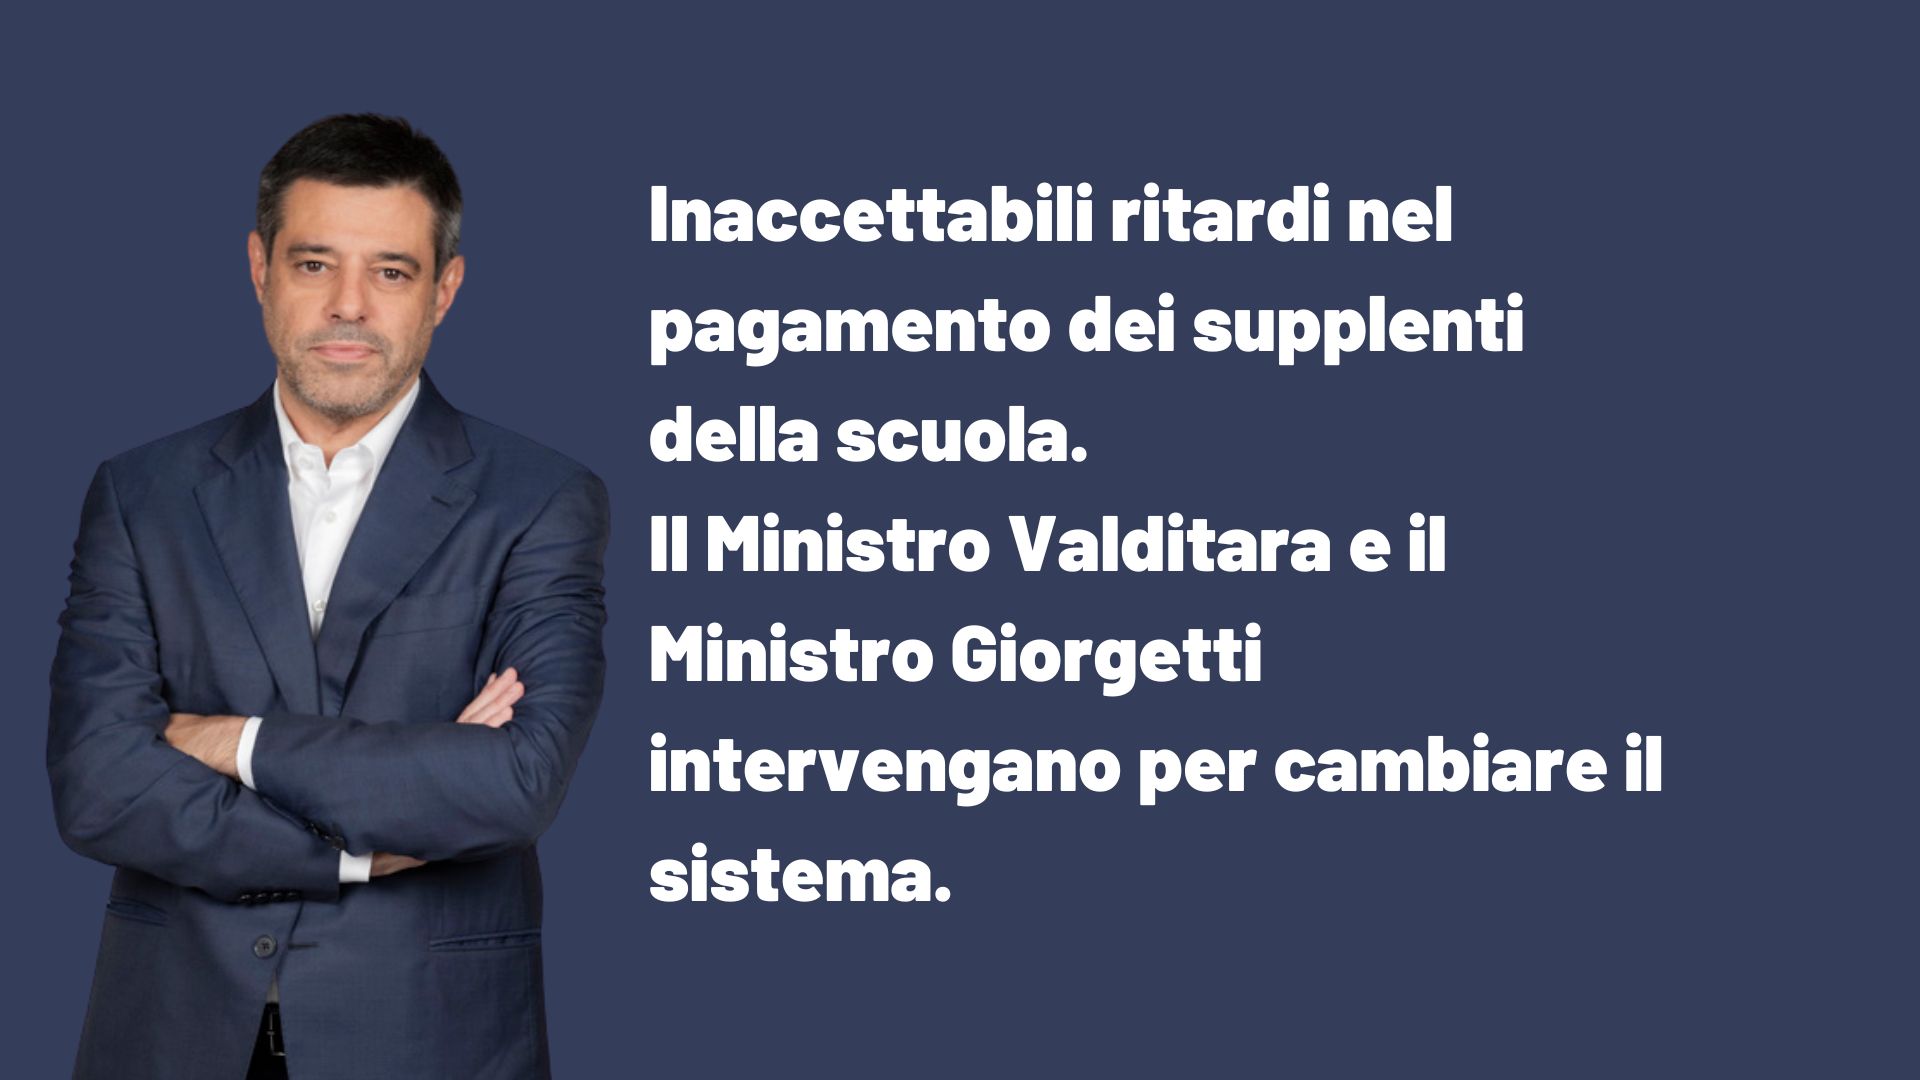 Inaccettabili ritardi nel pagamento dei supplenti della scuola. Il Ministro Valditara e il Ministro Giorgetti intervengano per cambiare il sistema.